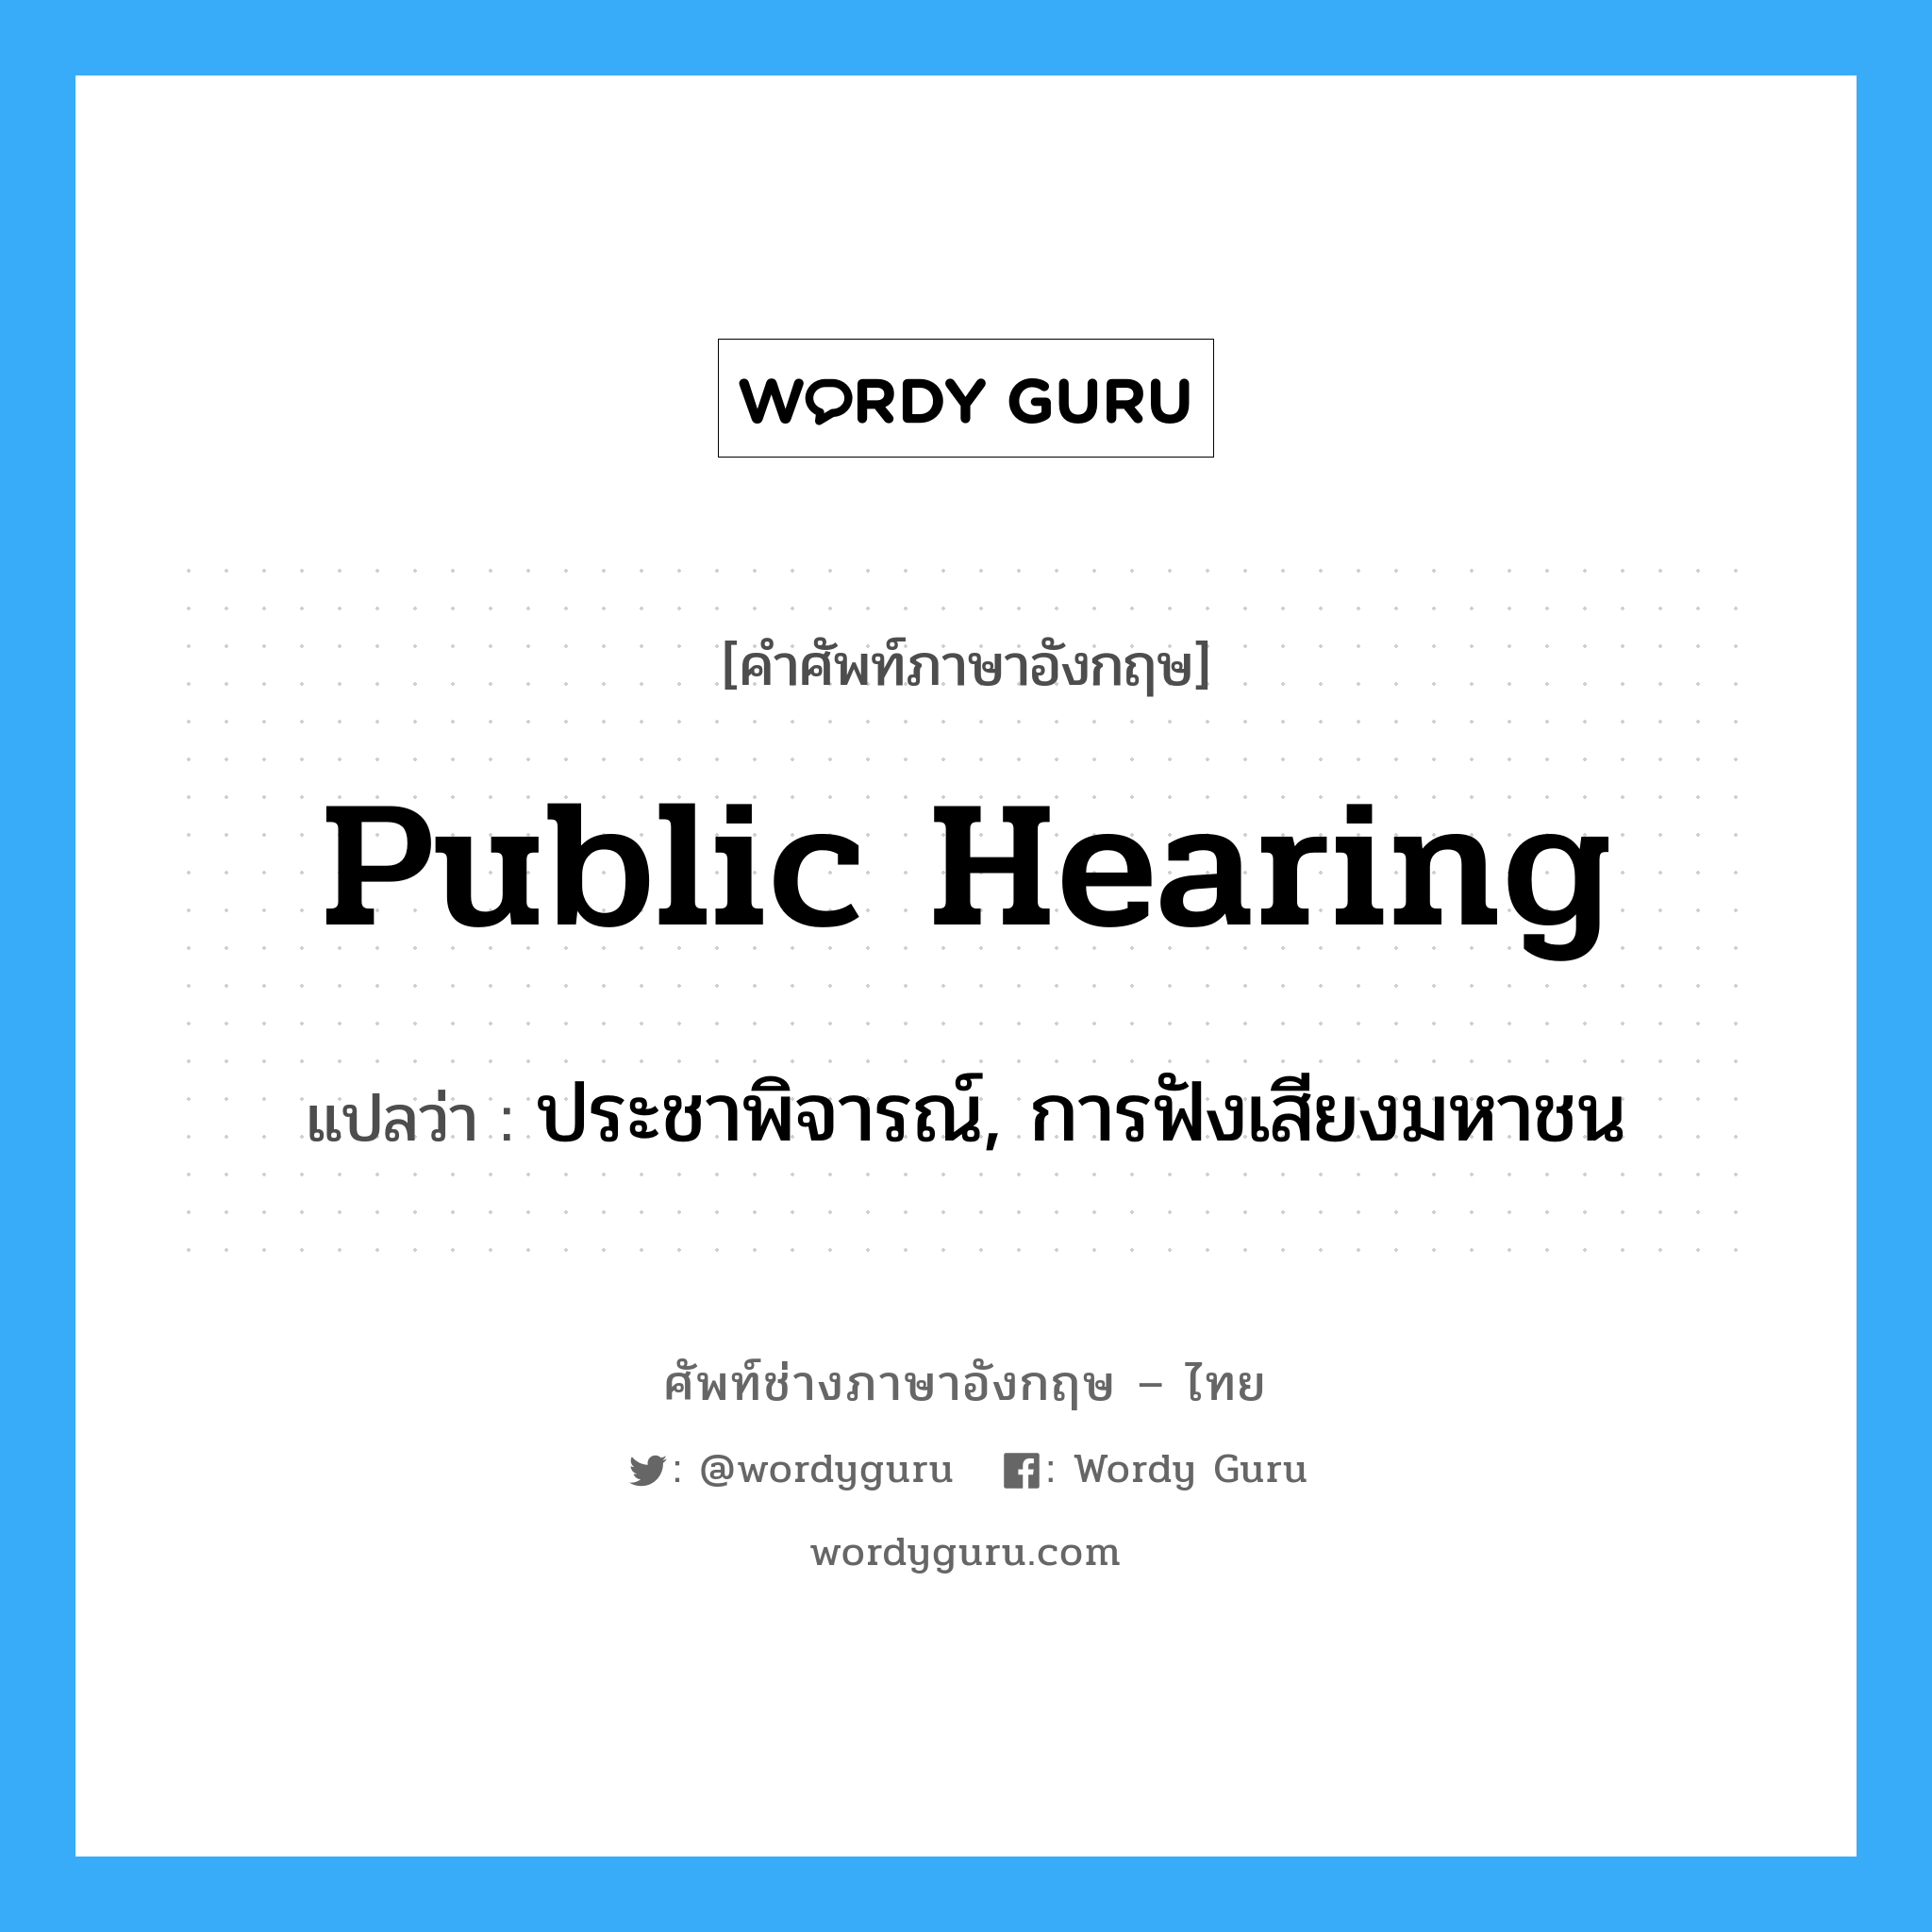 public hearing แปลว่า?, คำศัพท์ช่างภาษาอังกฤษ - ไทย public hearing คำศัพท์ภาษาอังกฤษ public hearing แปลว่า ประชาพิจารณ์, การฟังเสียงมหาชน